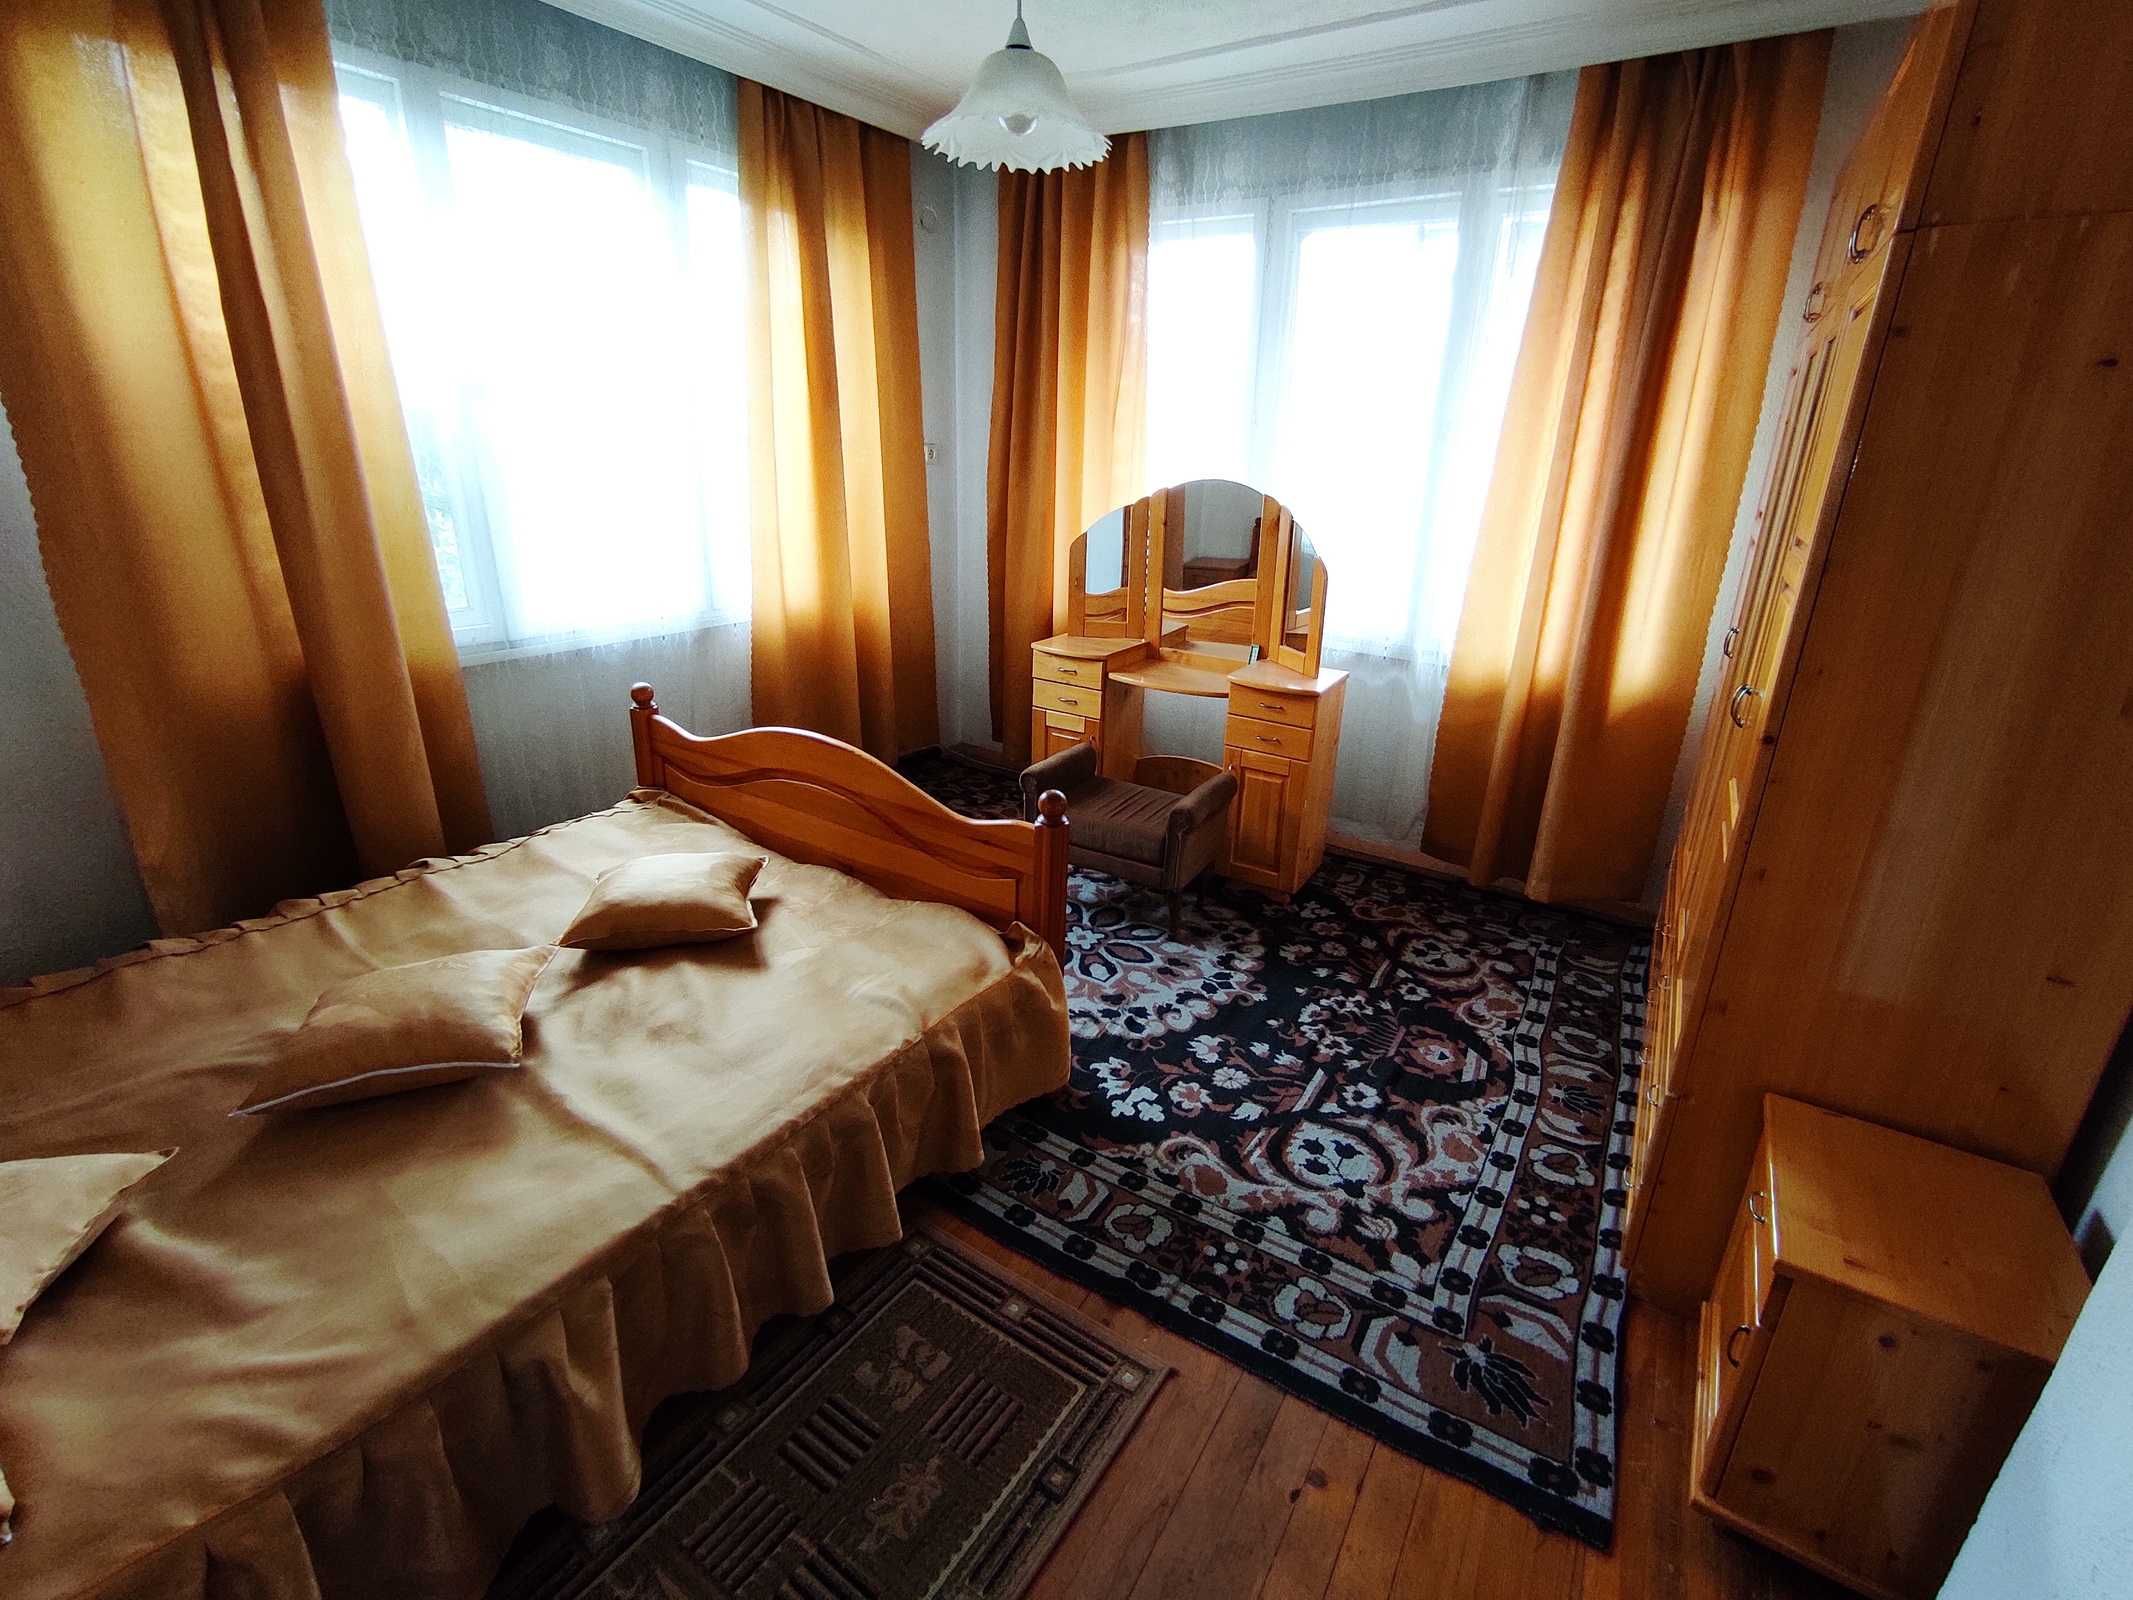 Велинград,  къща с готов етаж за живеене, гараж